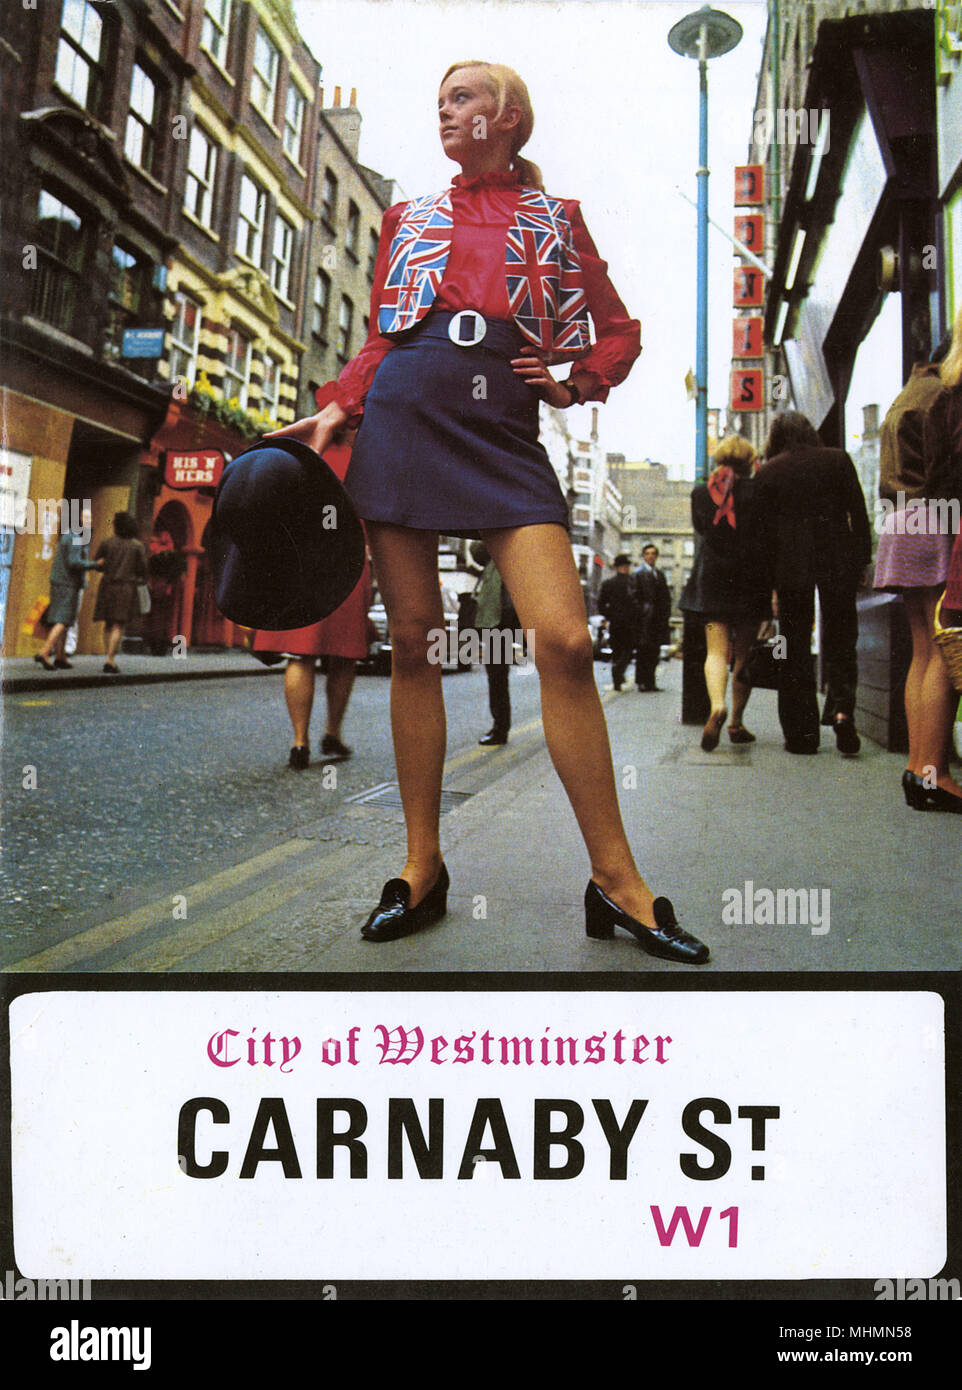 Portada de un folleto promocional sobre moda epicentro de la década de los sesenta, Carnaby Street, Londres. Una modelo posa delante de las diversas boutiques de la calle vistiendo un chaleco de Union Jack y mini falda. Fecha: 1966 Foto de stock